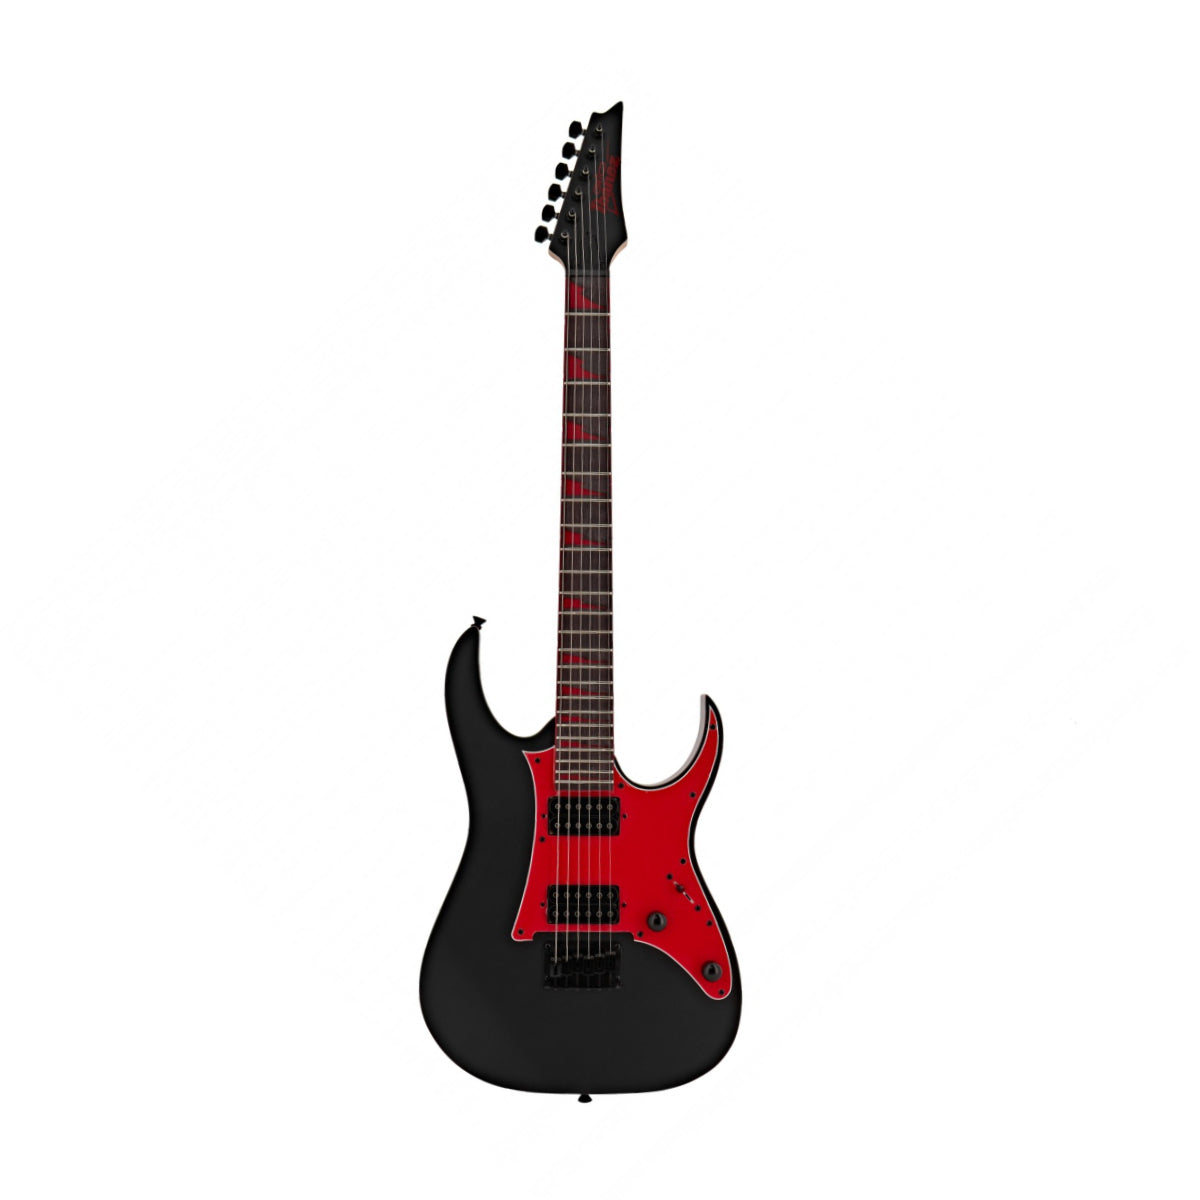 Đàn Guitar Điện Ibanez GIO GRG131DX, Black Flat 